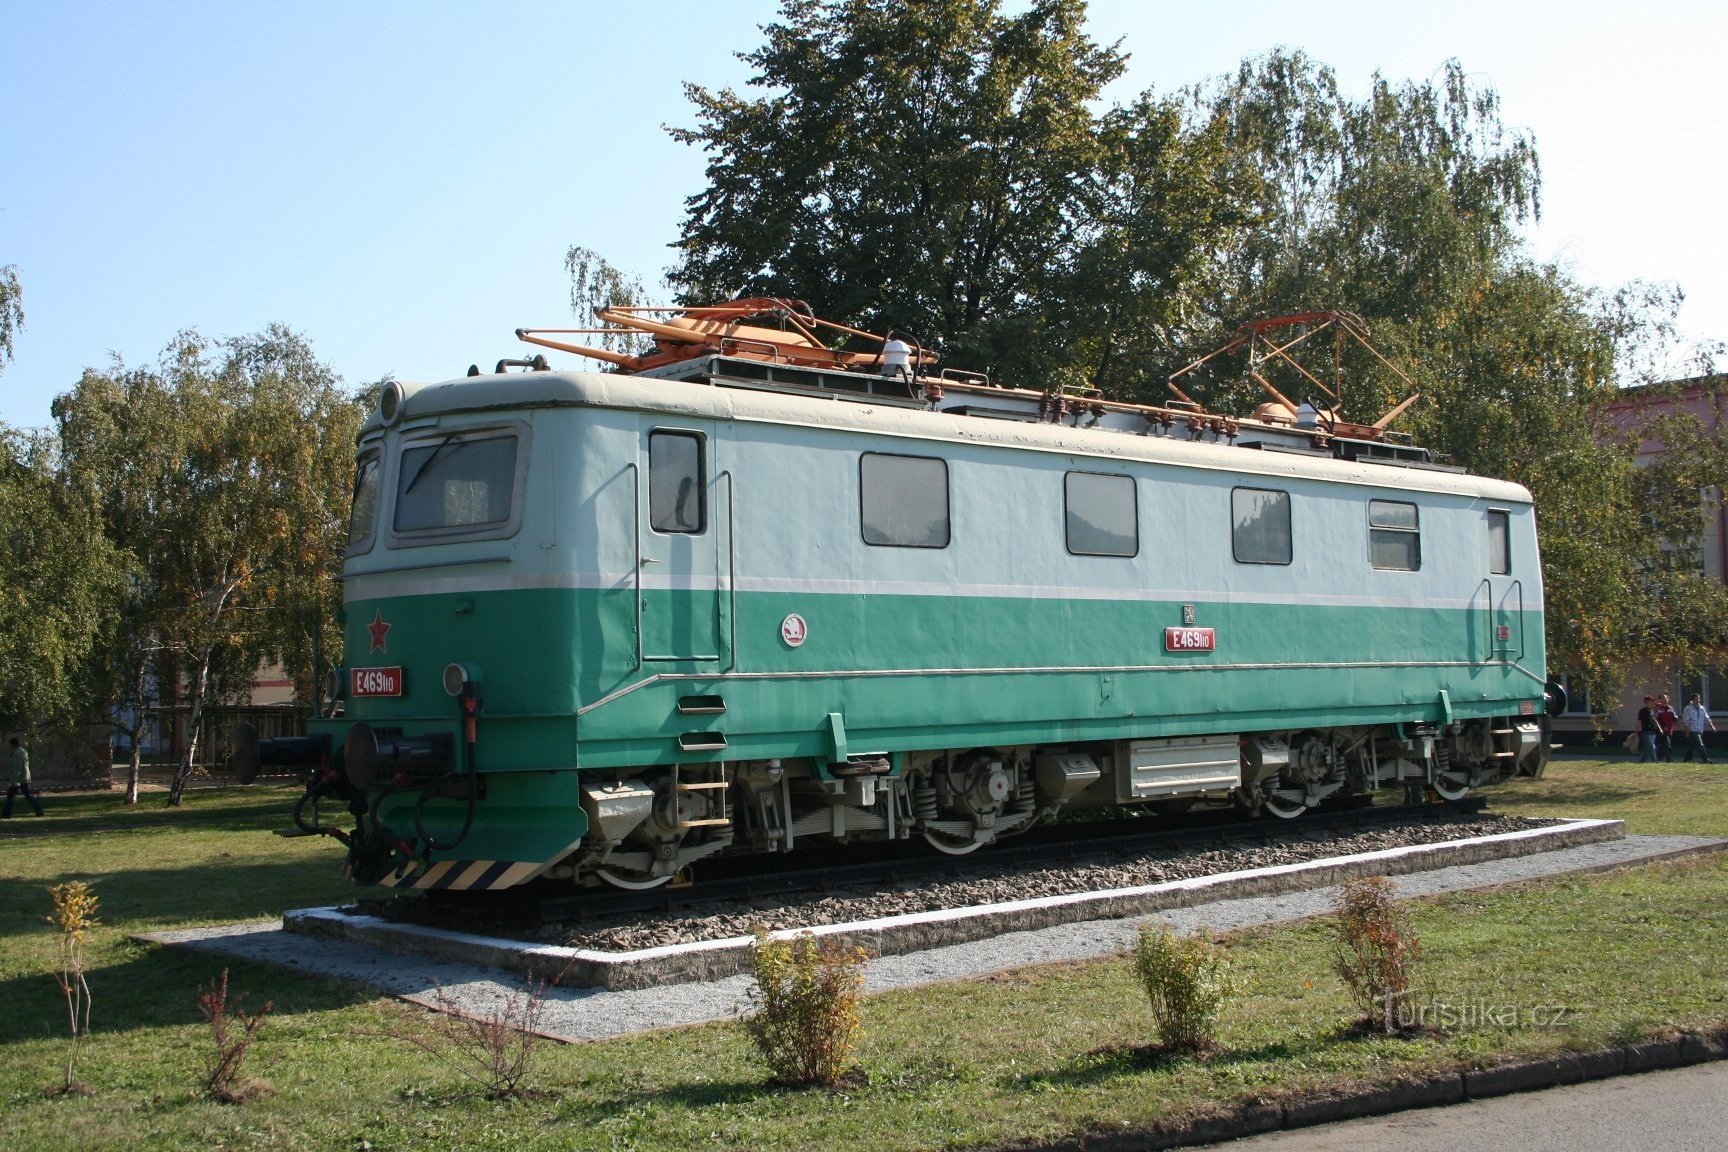 Spomenik lokomotiva - E 469.110